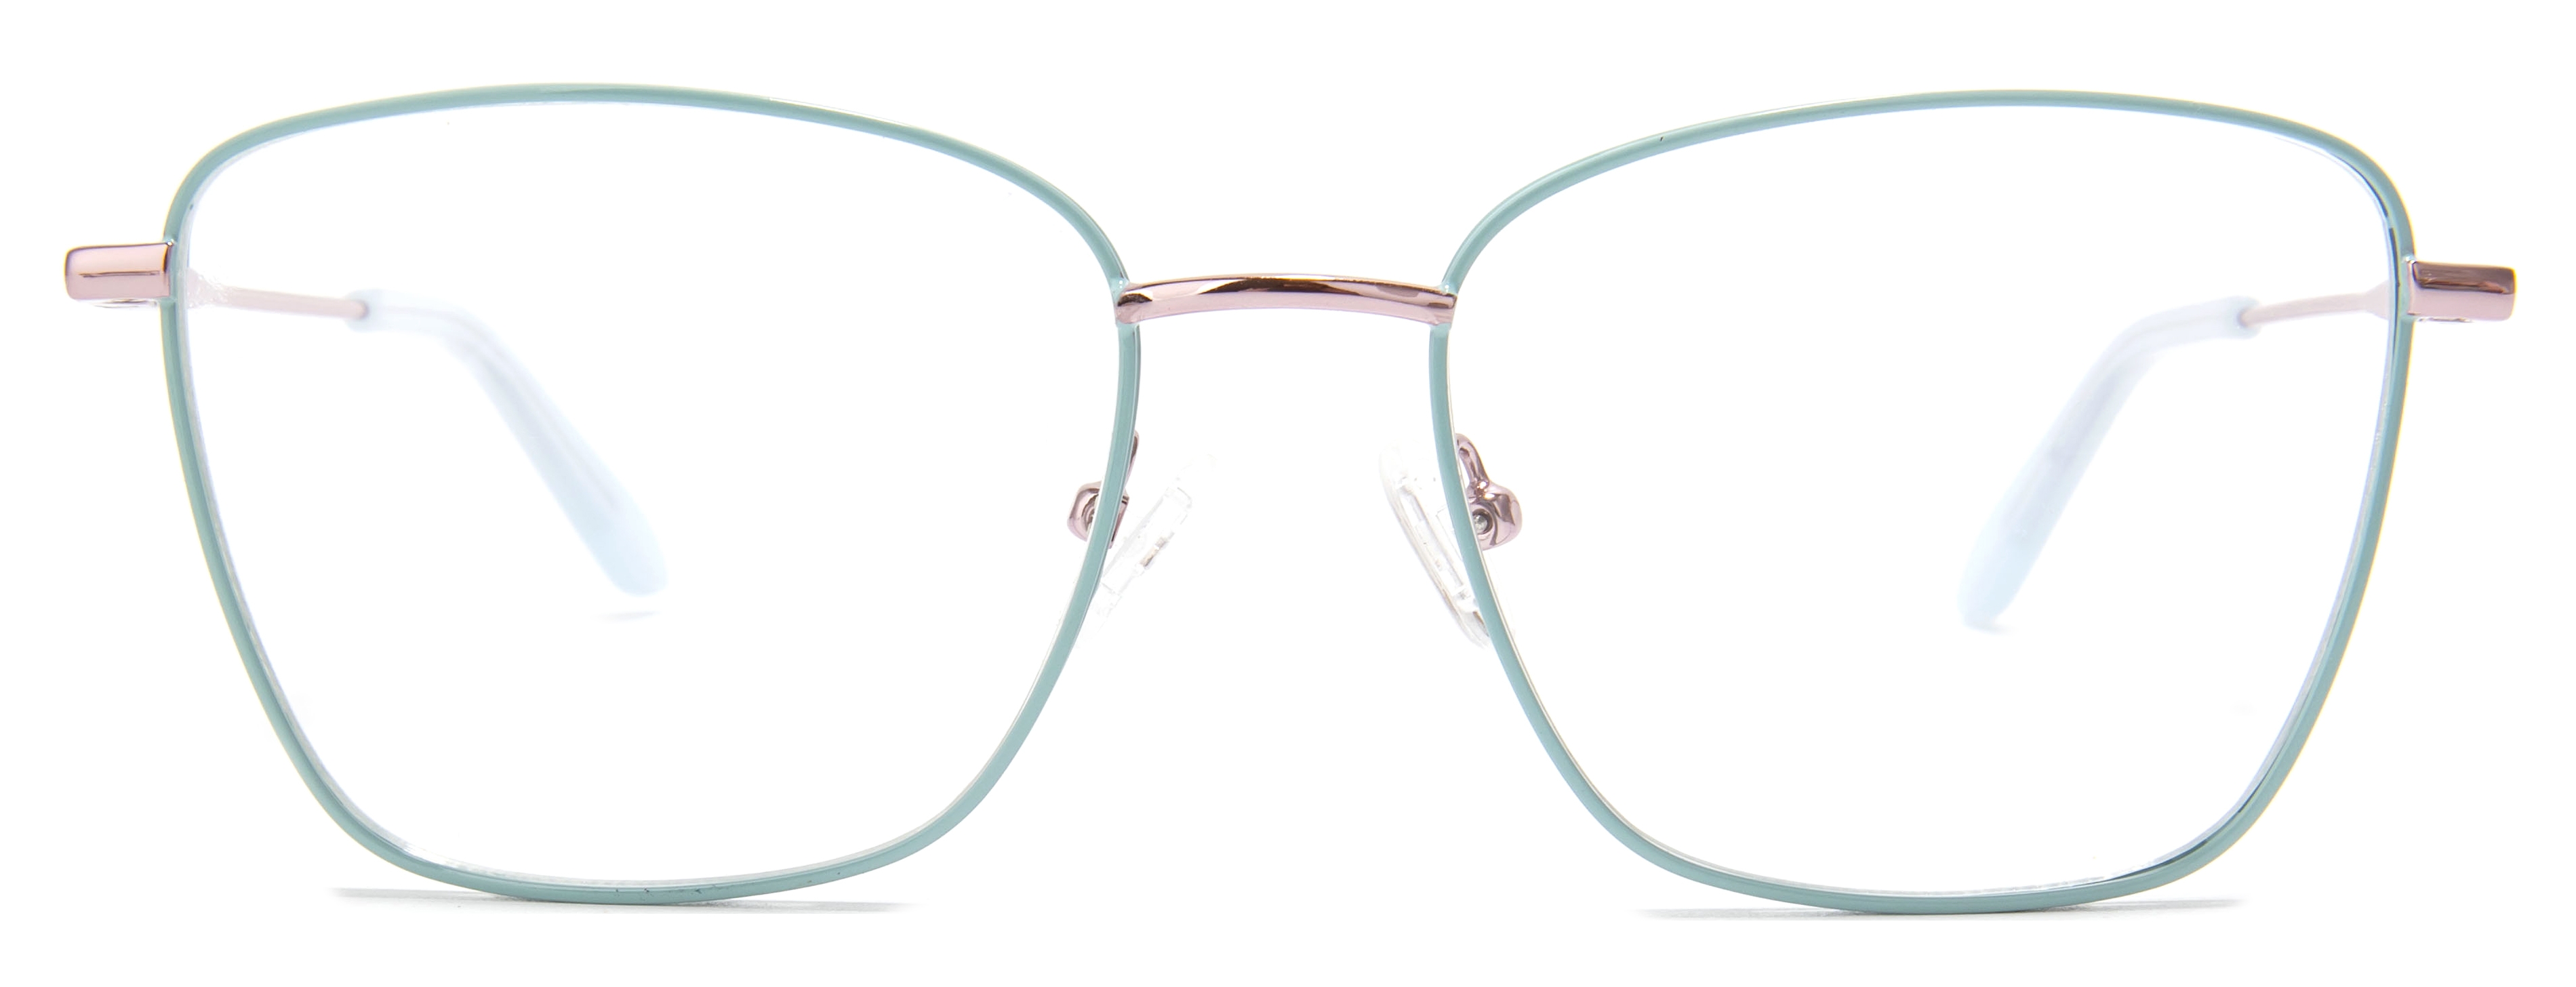 Geometric Euphoria-lake Glasses